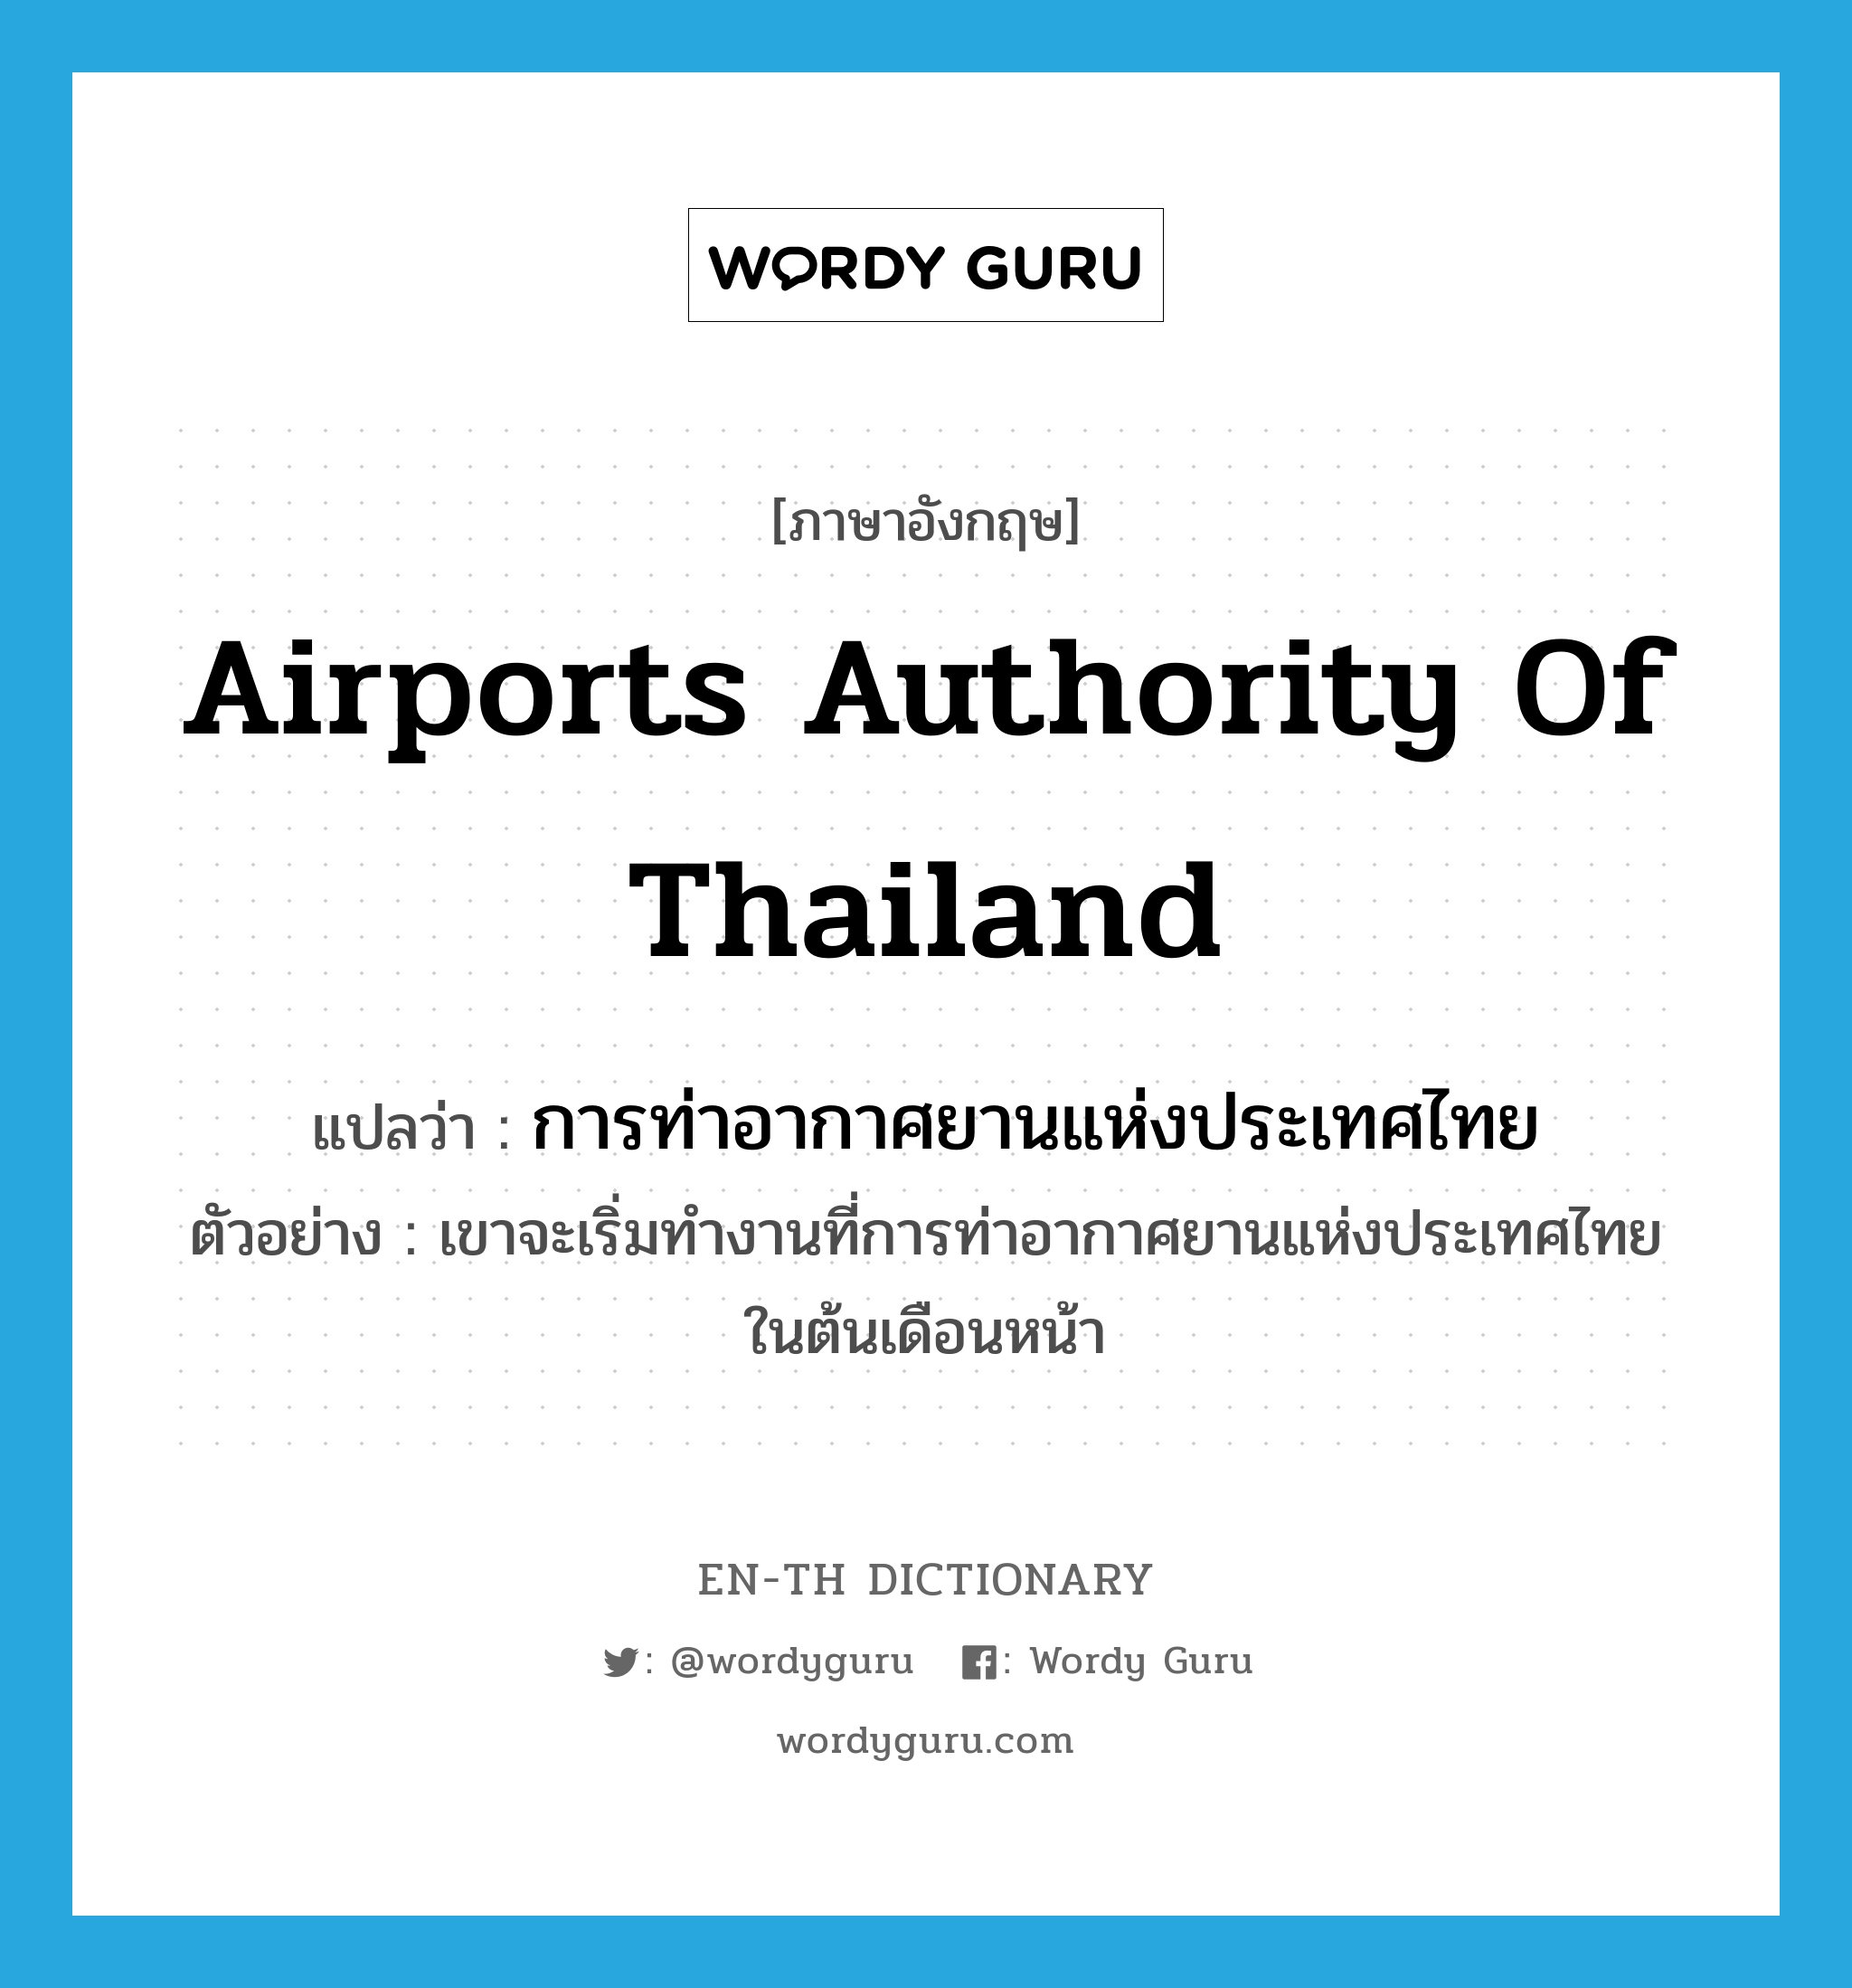 การท่าอากาศยานแห่งประเทศไทย ภาษาอังกฤษ?, คำศัพท์ภาษาอังกฤษ การท่าอากาศยานแห่งประเทศไทย แปลว่า Airports Authority of Thailand ประเภท N ตัวอย่าง เขาจะเริ่มทำงานที่การท่าอากาศยานแห่งประเทศไทยในต้นเดือนหน้า หมวด N